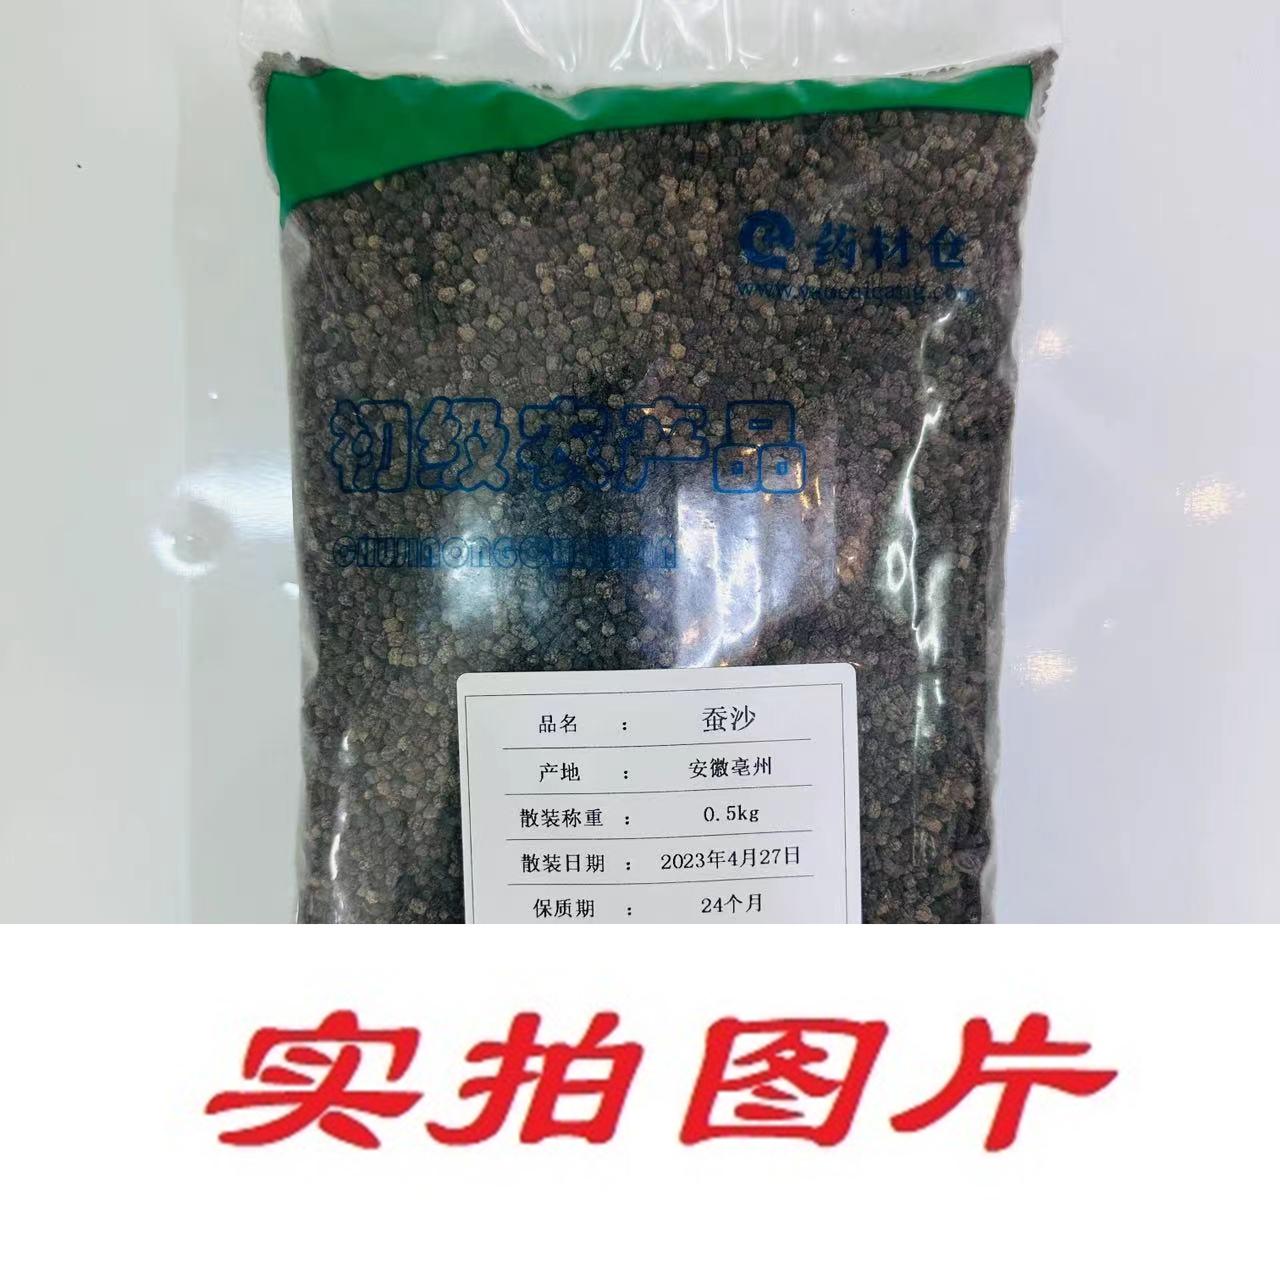 【】蚕沙0.5kg-农副产品